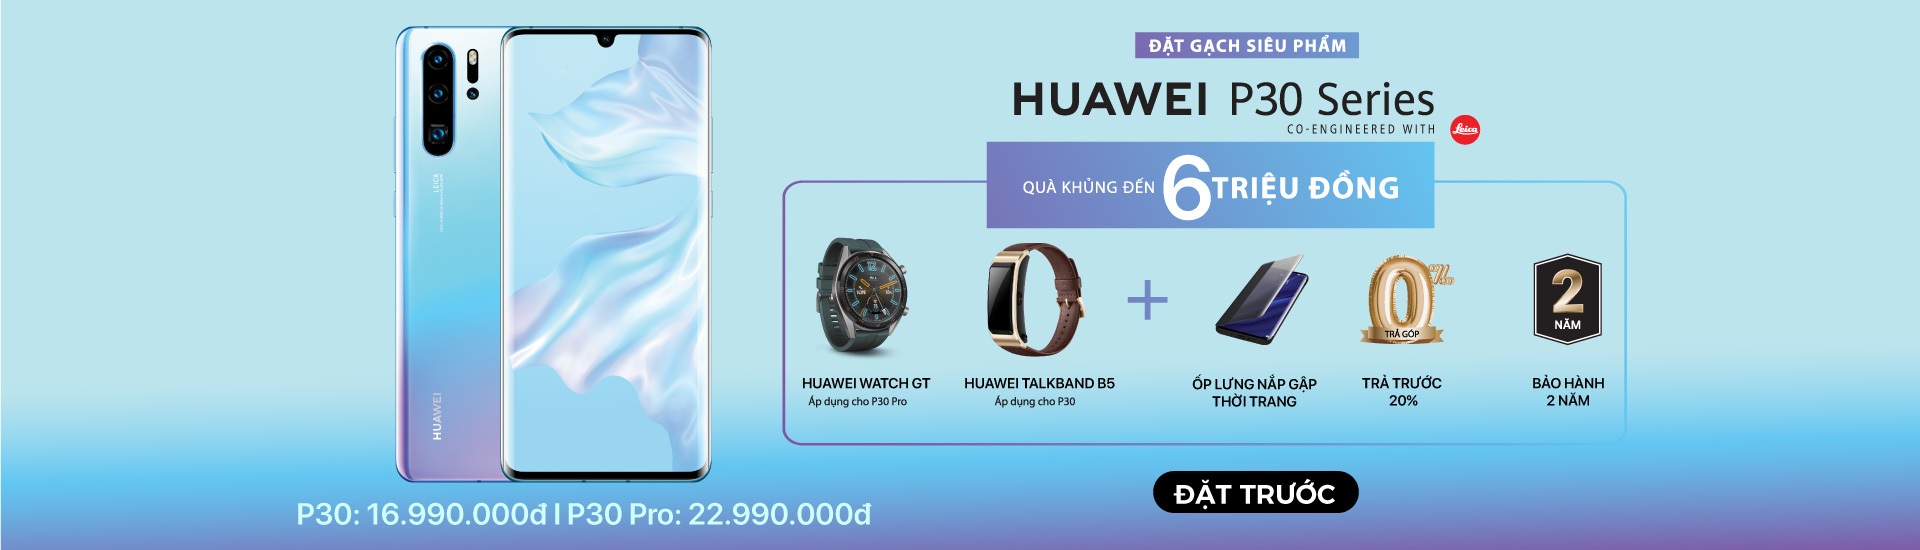 1920x550-Huawei